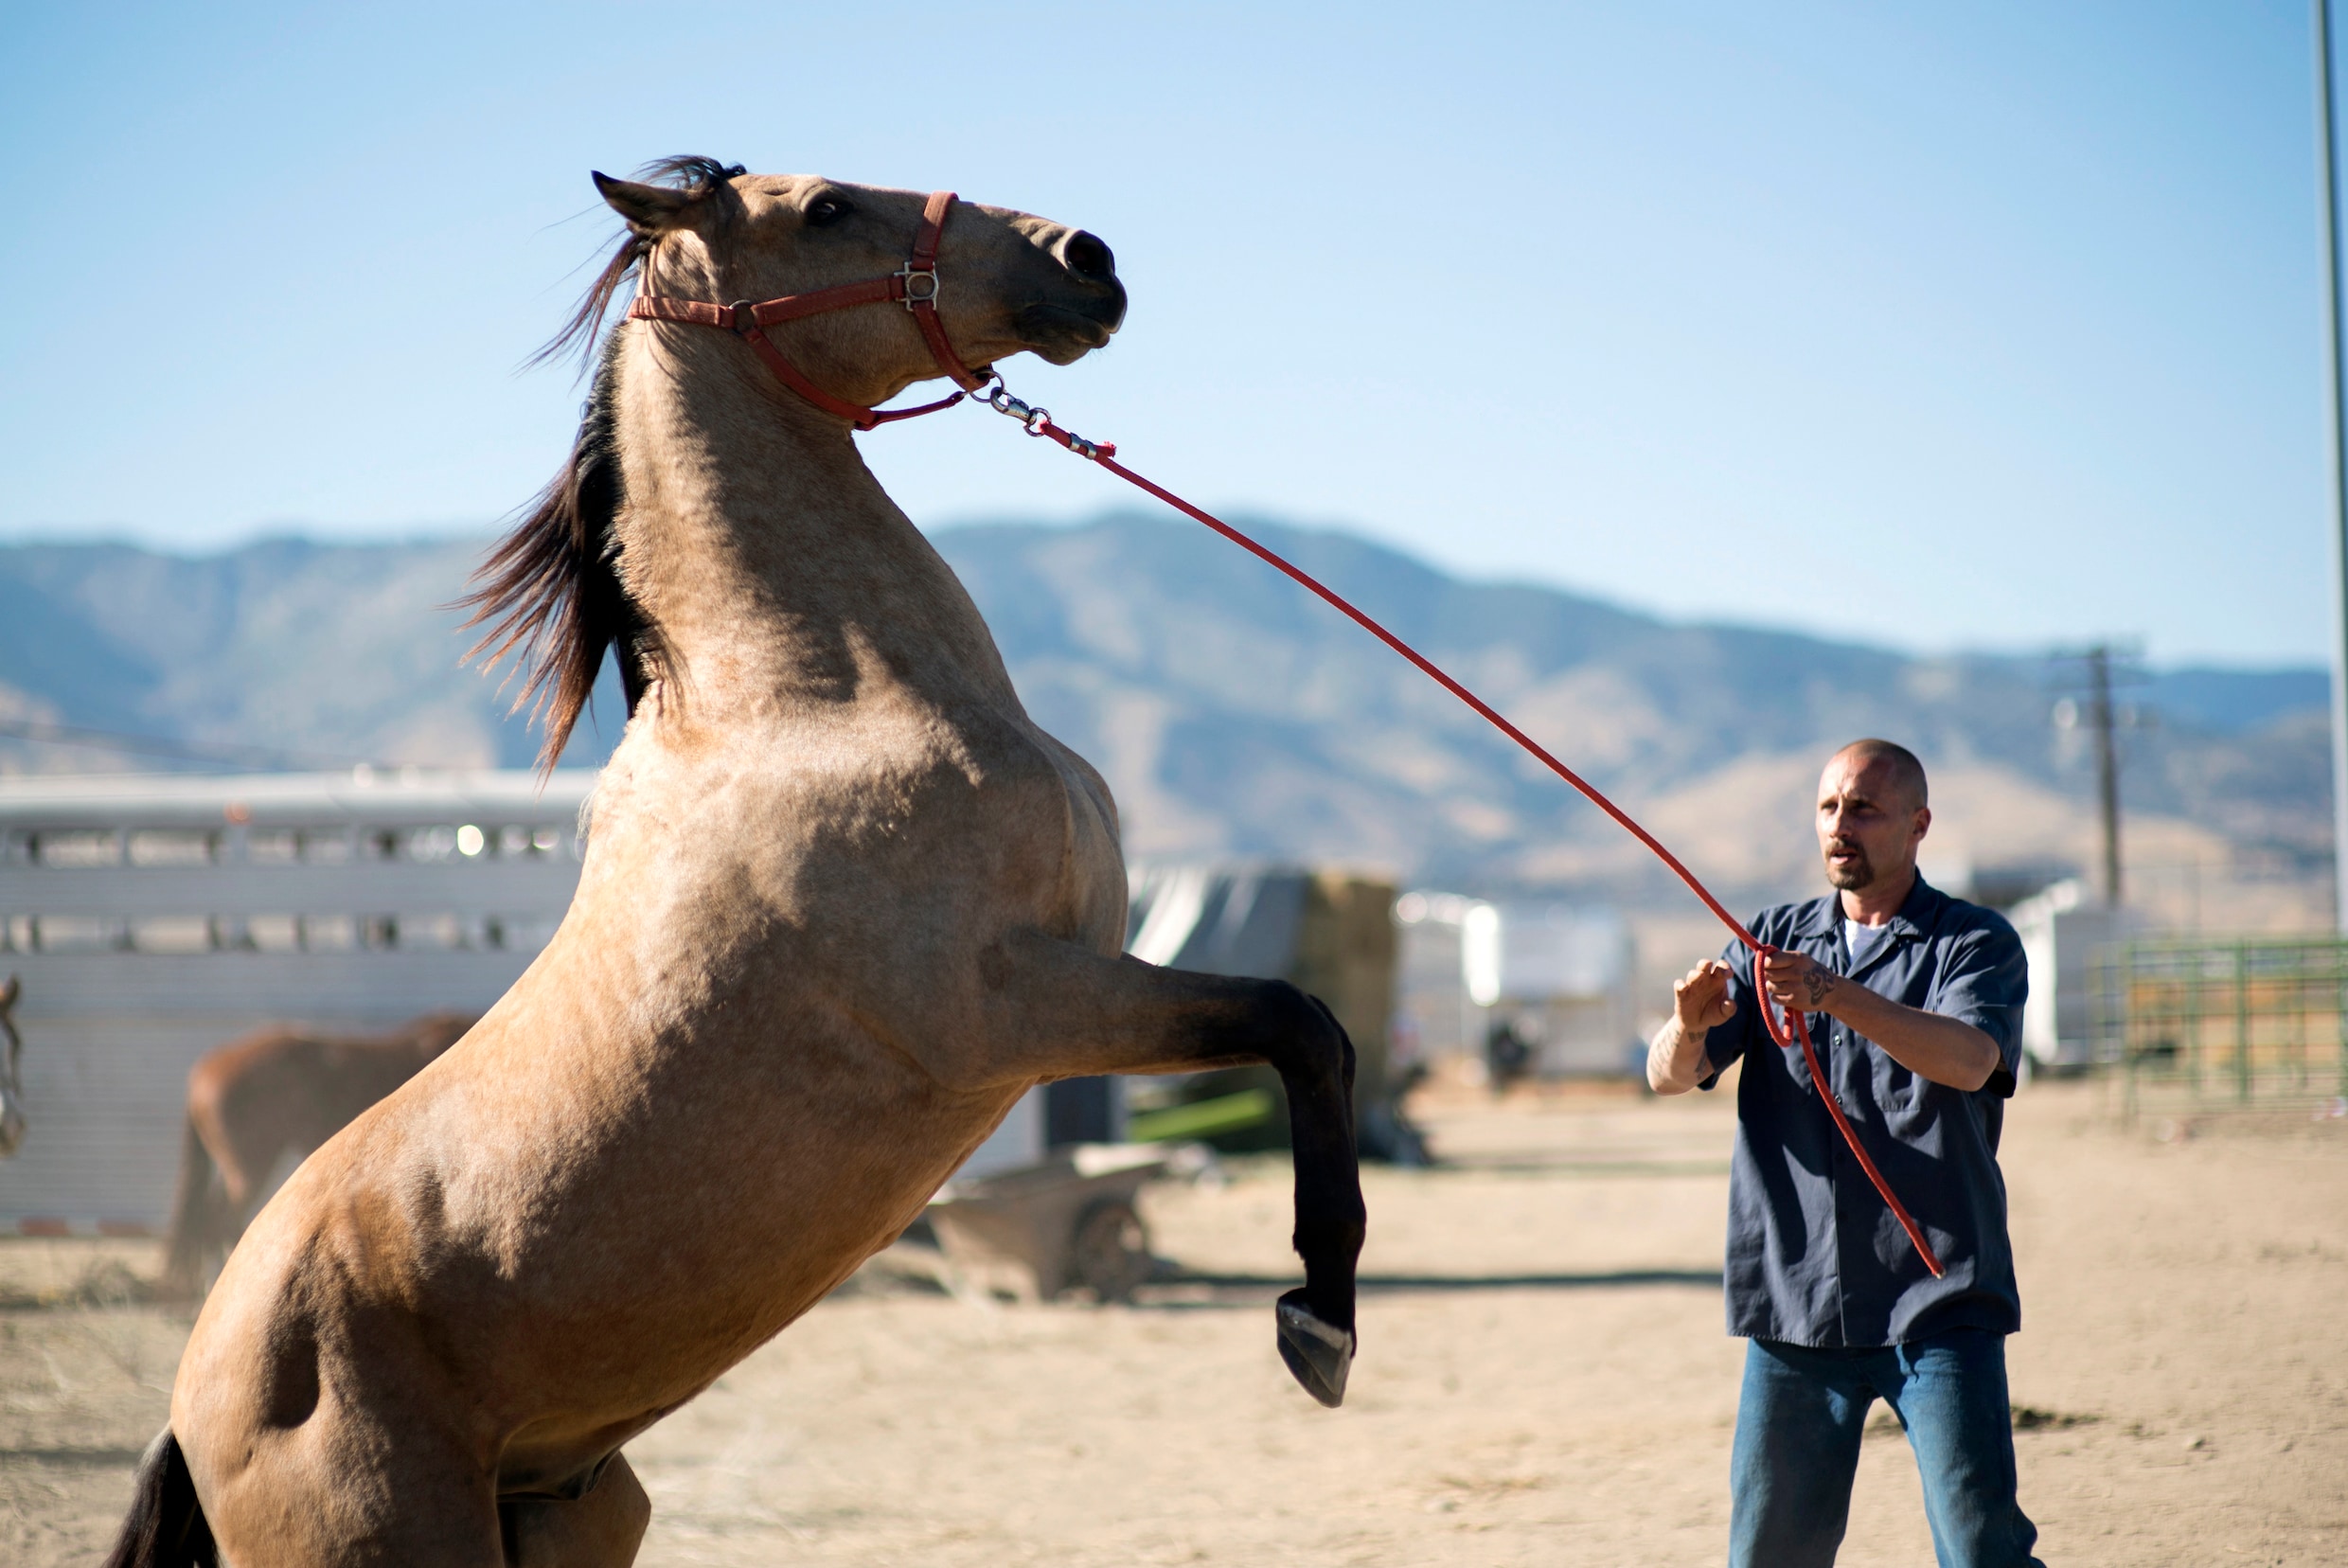 Matthias Schoenaerts speelt gevangene in ‘The Mustang’: ‘Dat paard kon me letterlijk vernielen in een fractie van een seconde’